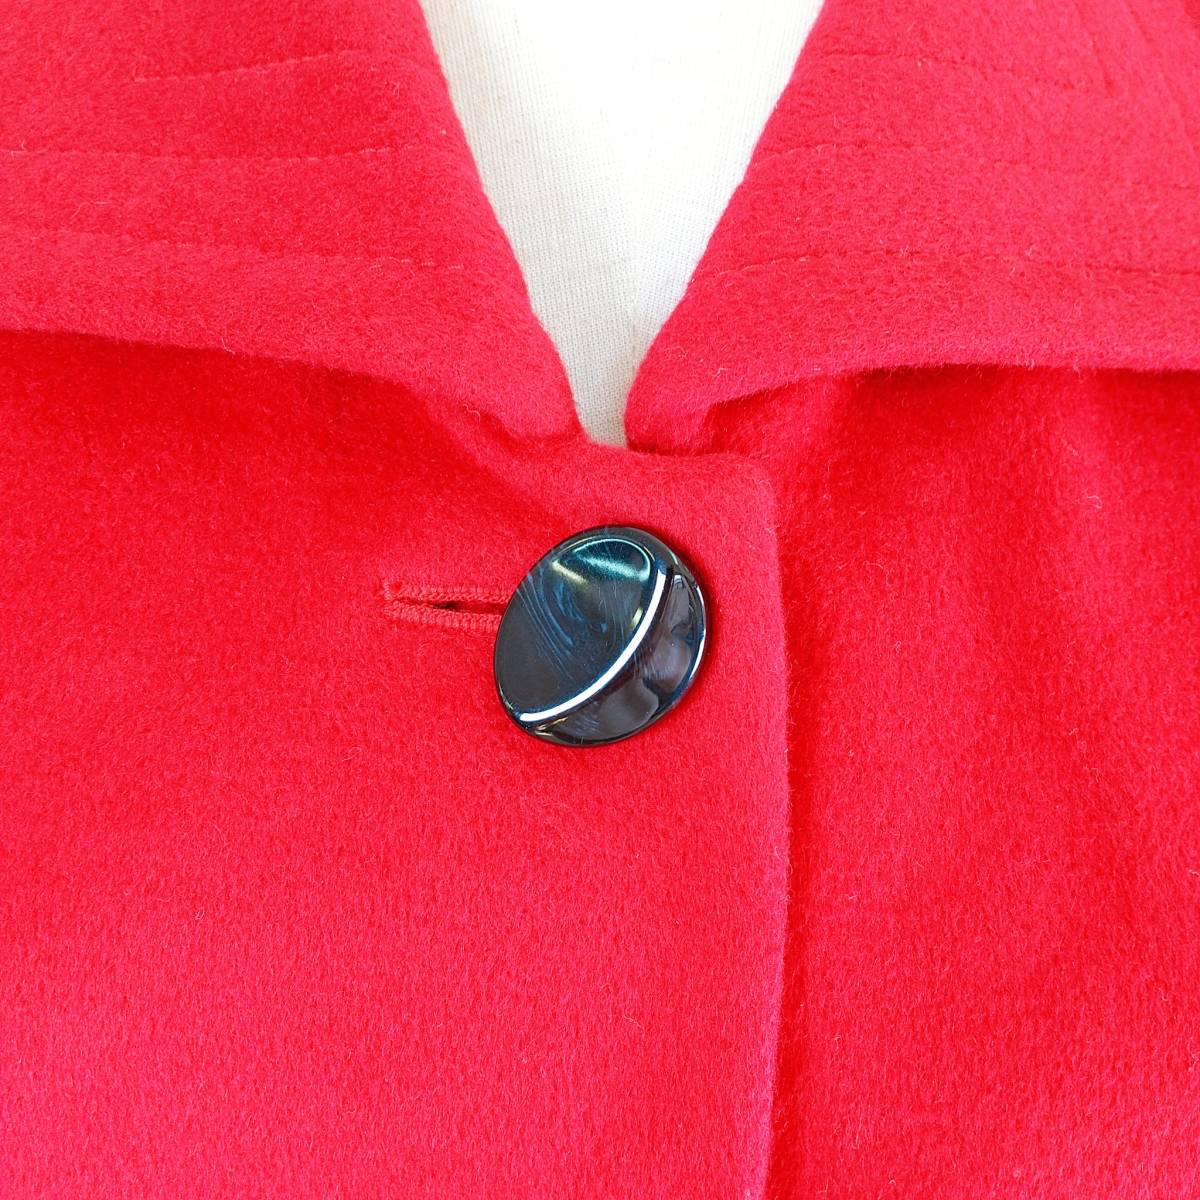 OS511 UNIQLO ユニクロ ピーコート アンゴラ 羊毛 ウール 人気カラー 人気ビッグボタンデザイン きれい色レッド 赤 レディース Mサイズ_画像3